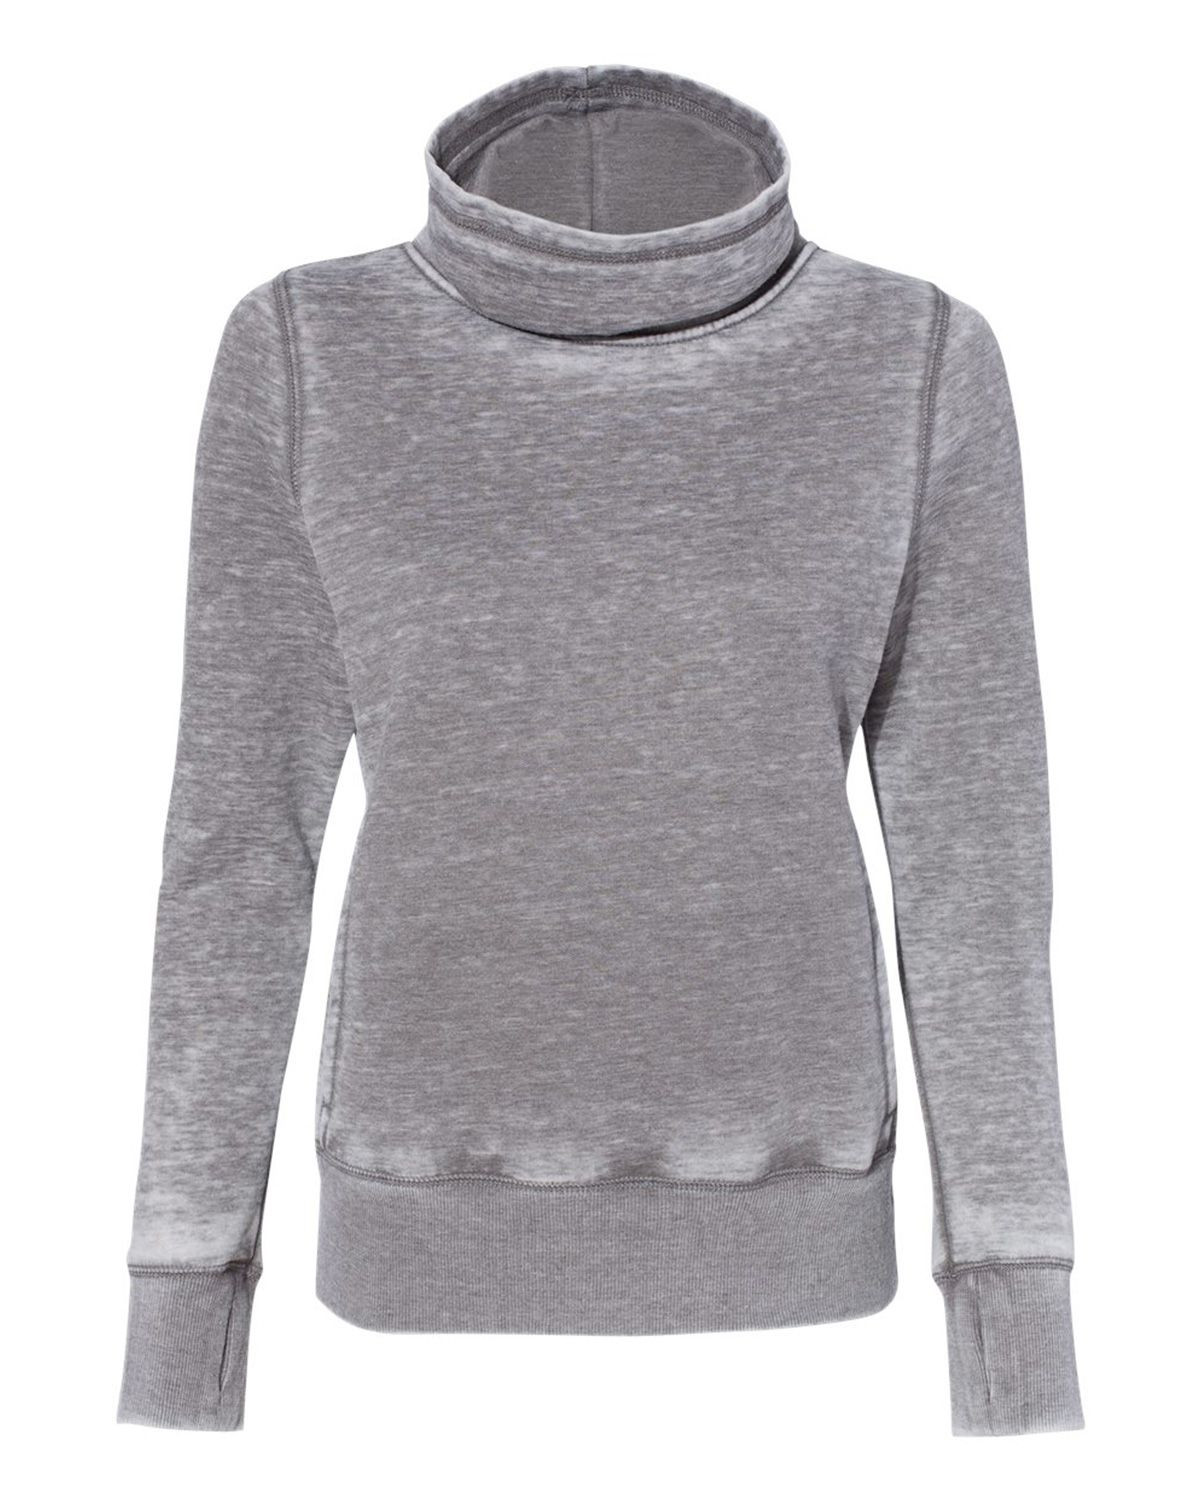 J America 8930 Women's Vintage Zen Fleece Cowl Neck Sweatshirt - Cement - S #vintage